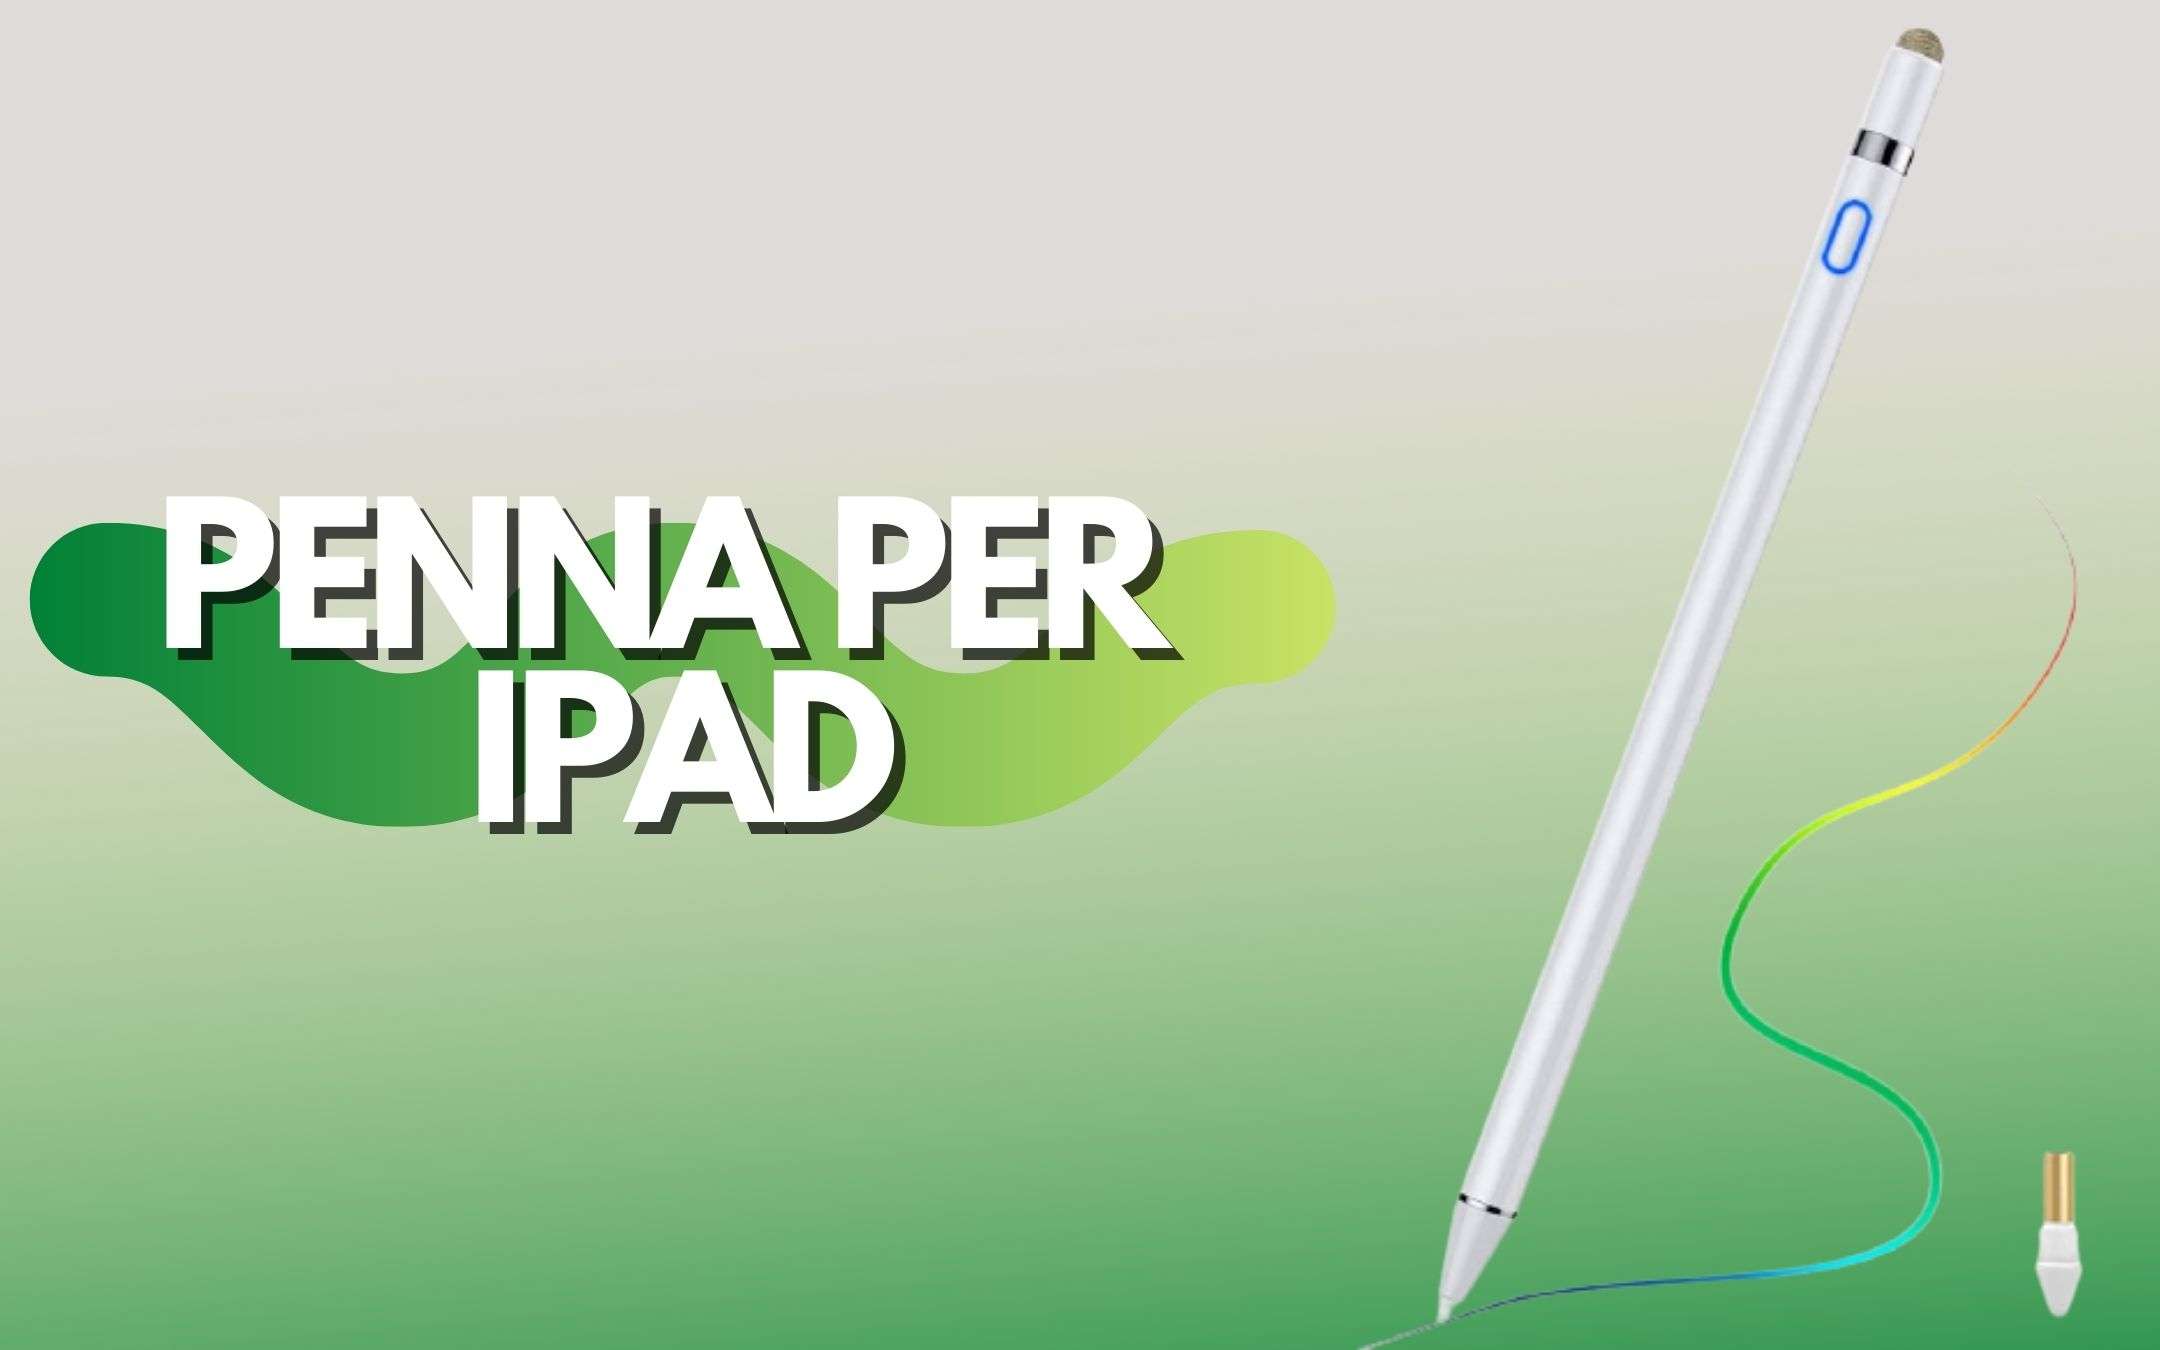 Penna per iPad a prezzo strabiliante: appena 30€